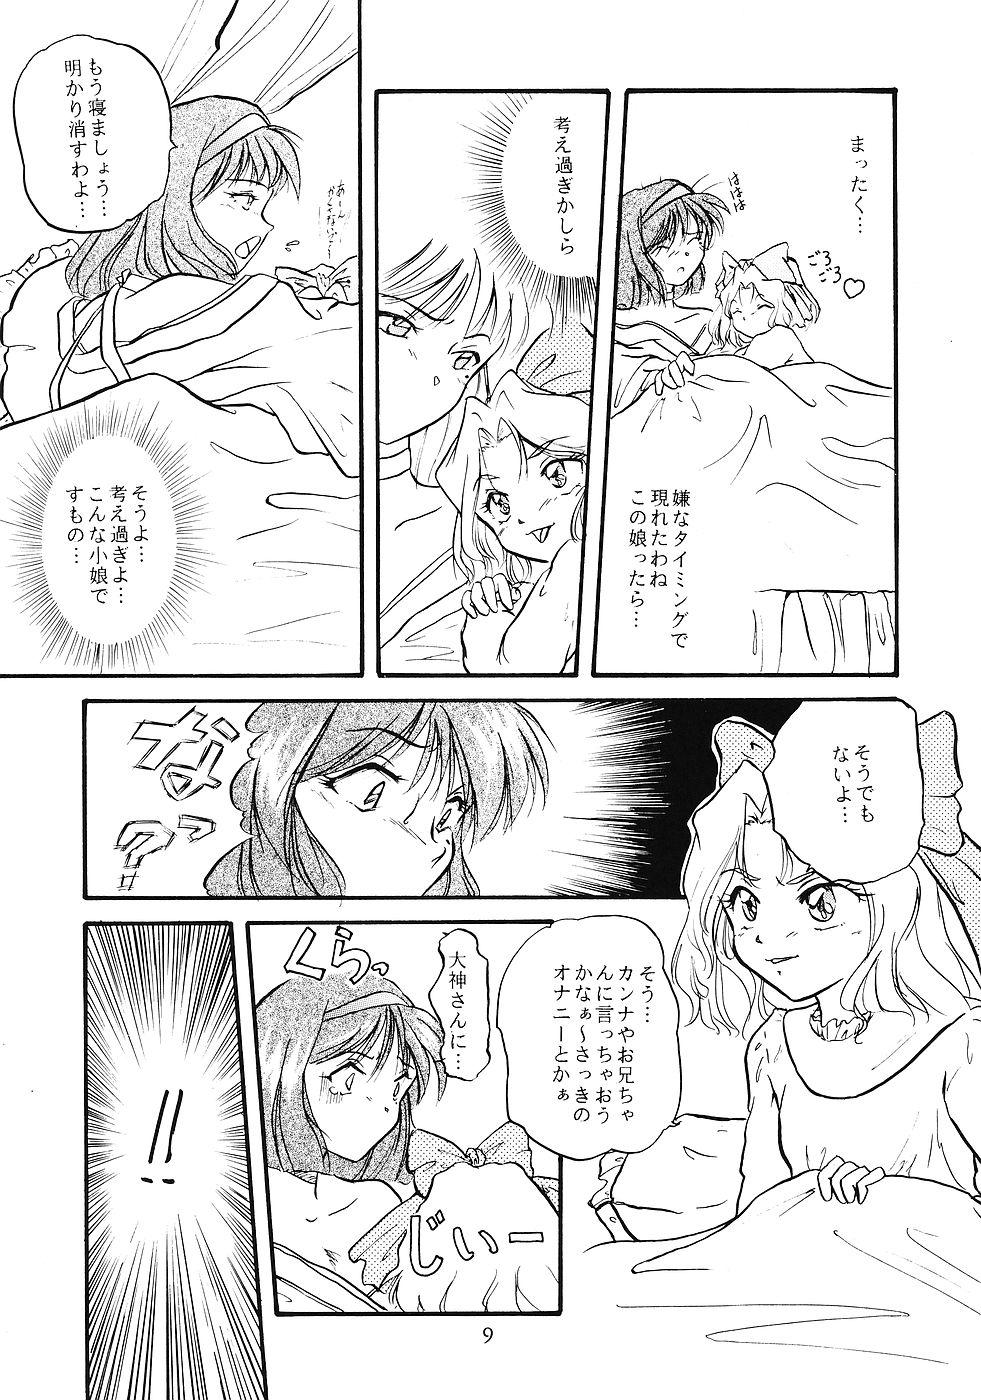 Chica WIEGE 3 - Cardcaptor sakura Sakura taisen Seduction Porn - Page 8